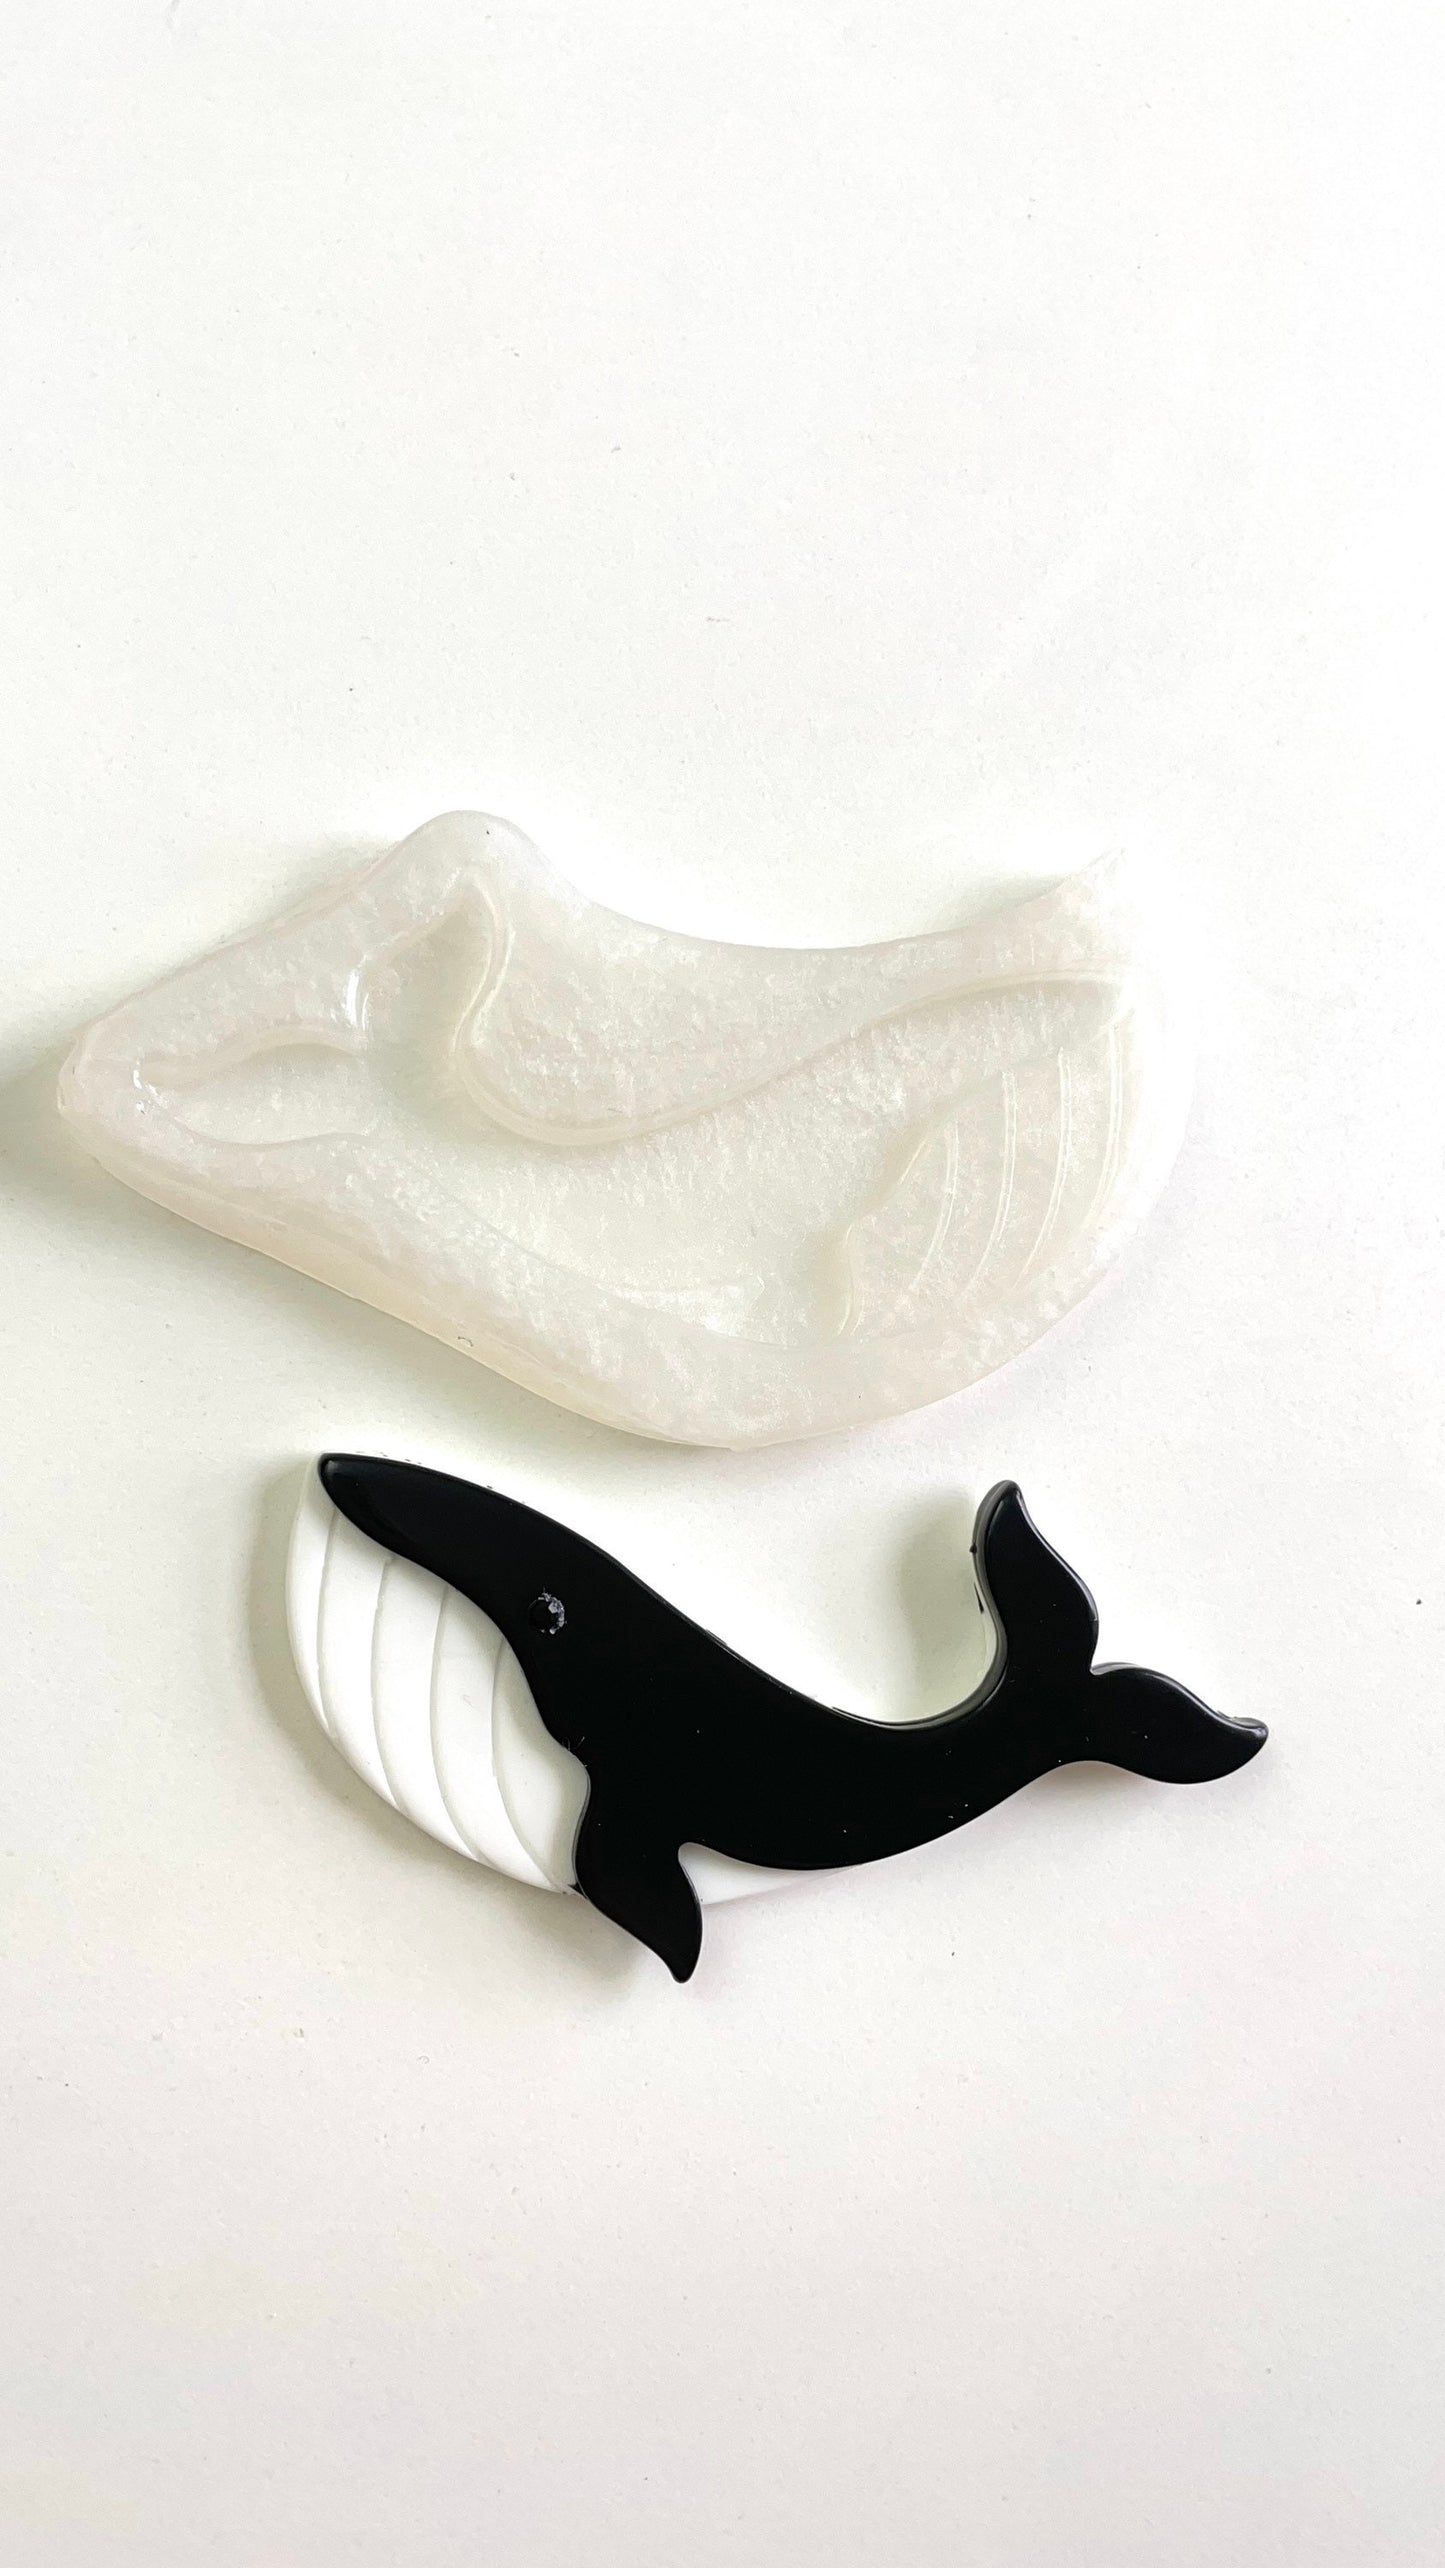 Силиконовая форма для морских китов: эпоксидная смола, морская промышленность, ювелирные изделия и лепка из глины